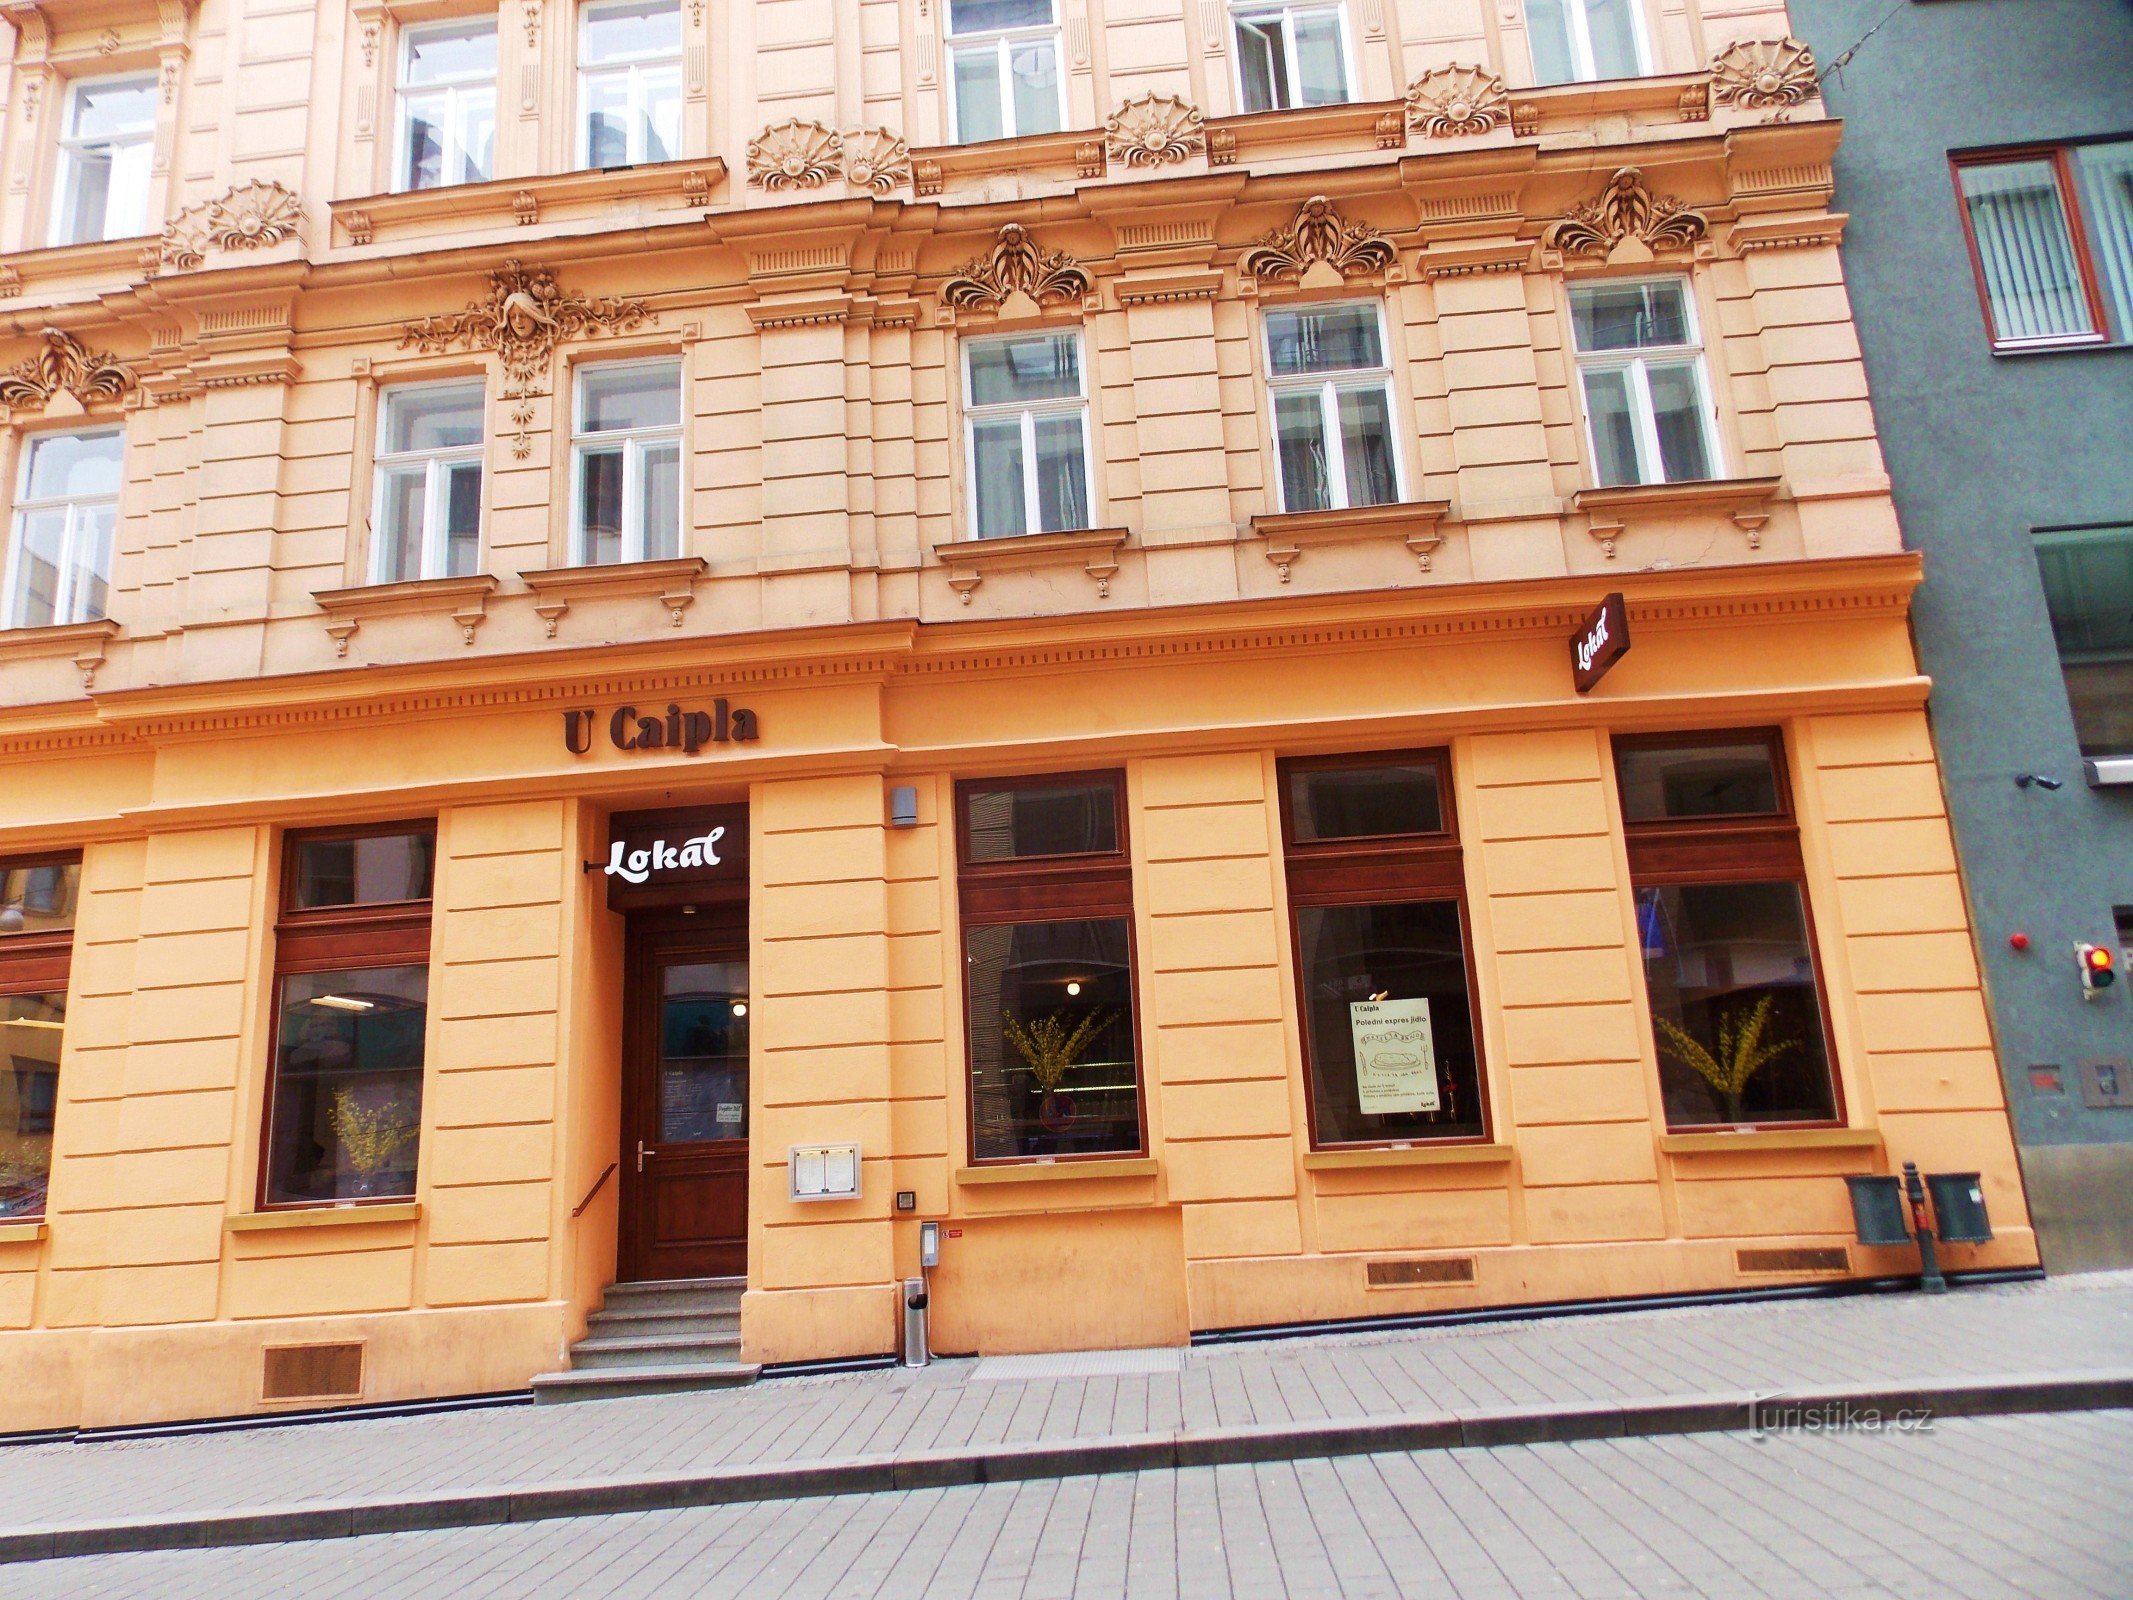 Restaurang - Lokal nära Caipla i centrum av Brno